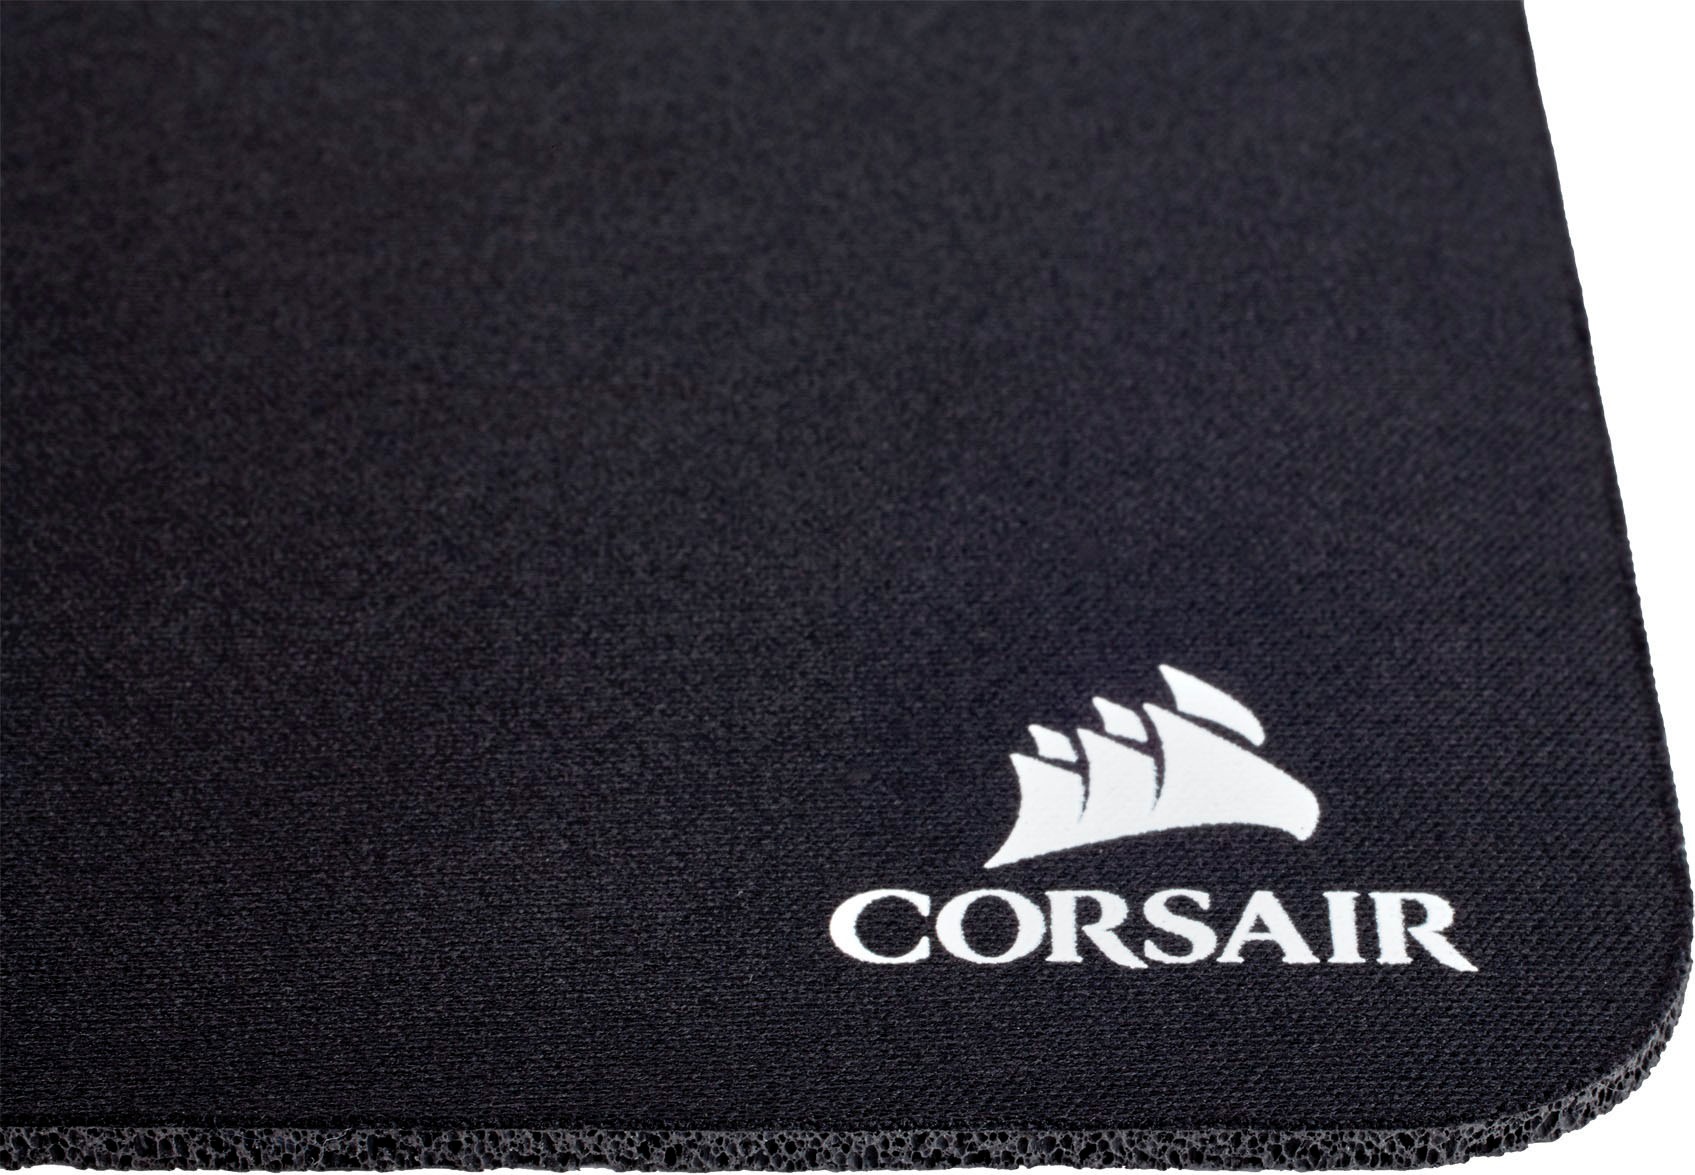 meistverkauft Corsair Gaming-Maus kabelgebunden UNIVERSAL Garantie »M65 Mouse«, Jahre 3 | RGB ELITE Gaming XXL ➥